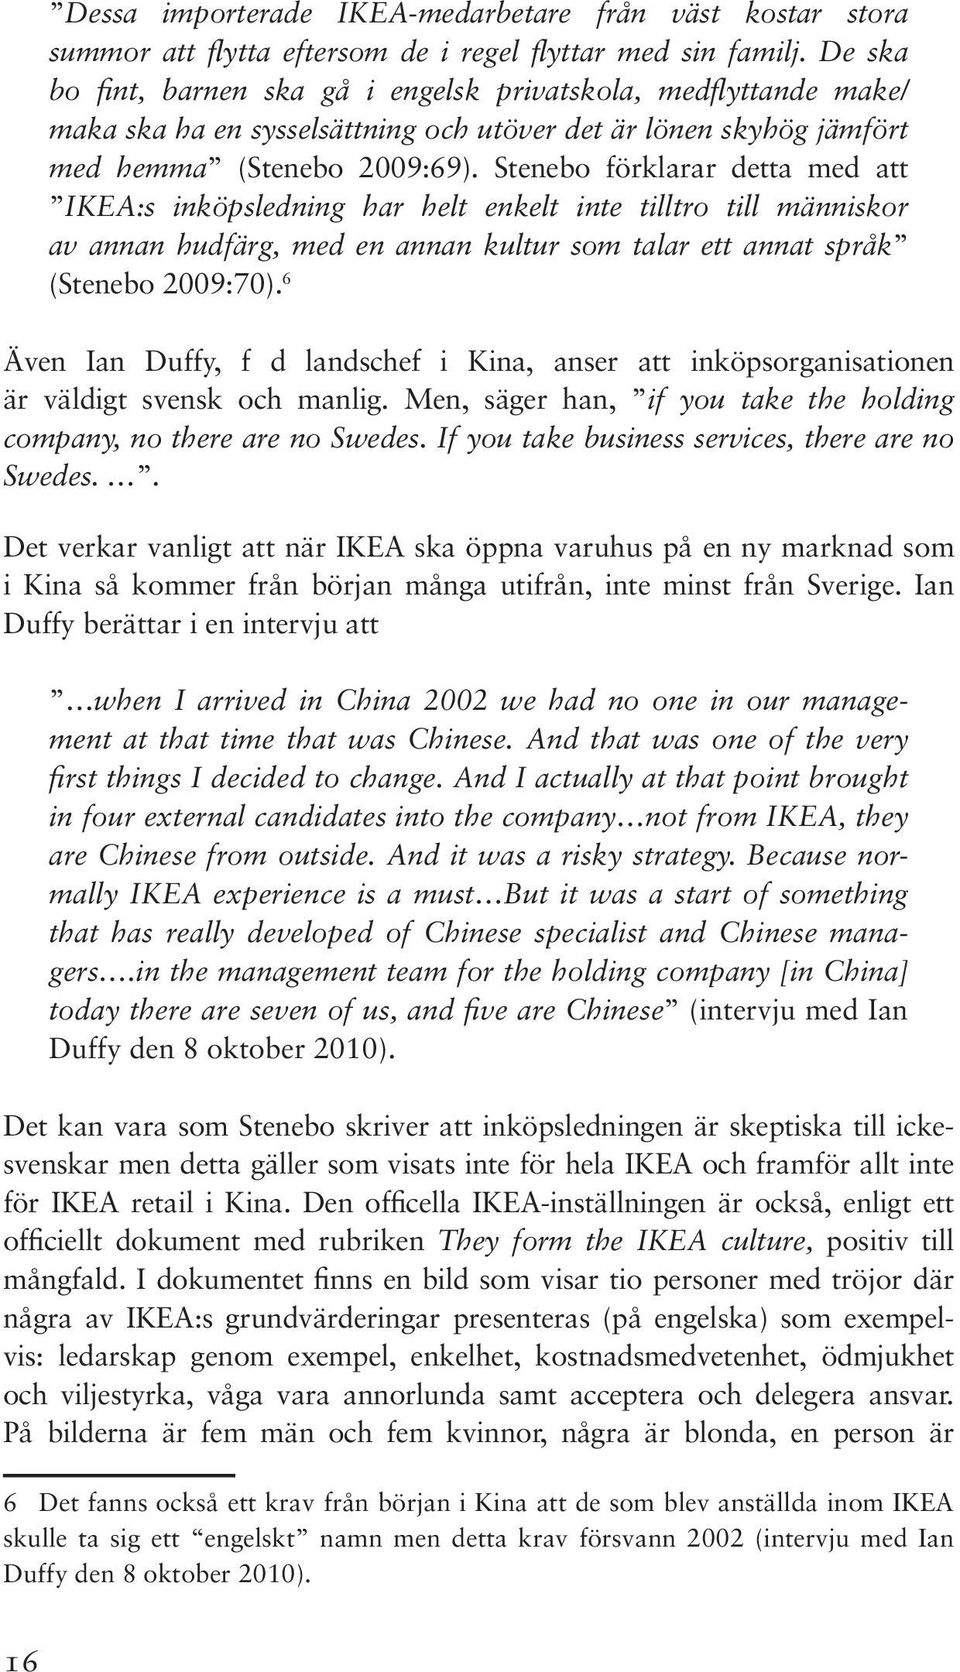 Stenebo förklarar detta med att IKEA:s inköpsledning har helt enkelt inte tilltro till människor av annan hudfärg, med en annan kultur som talar ett annat språk (Stenebo 2009:70).